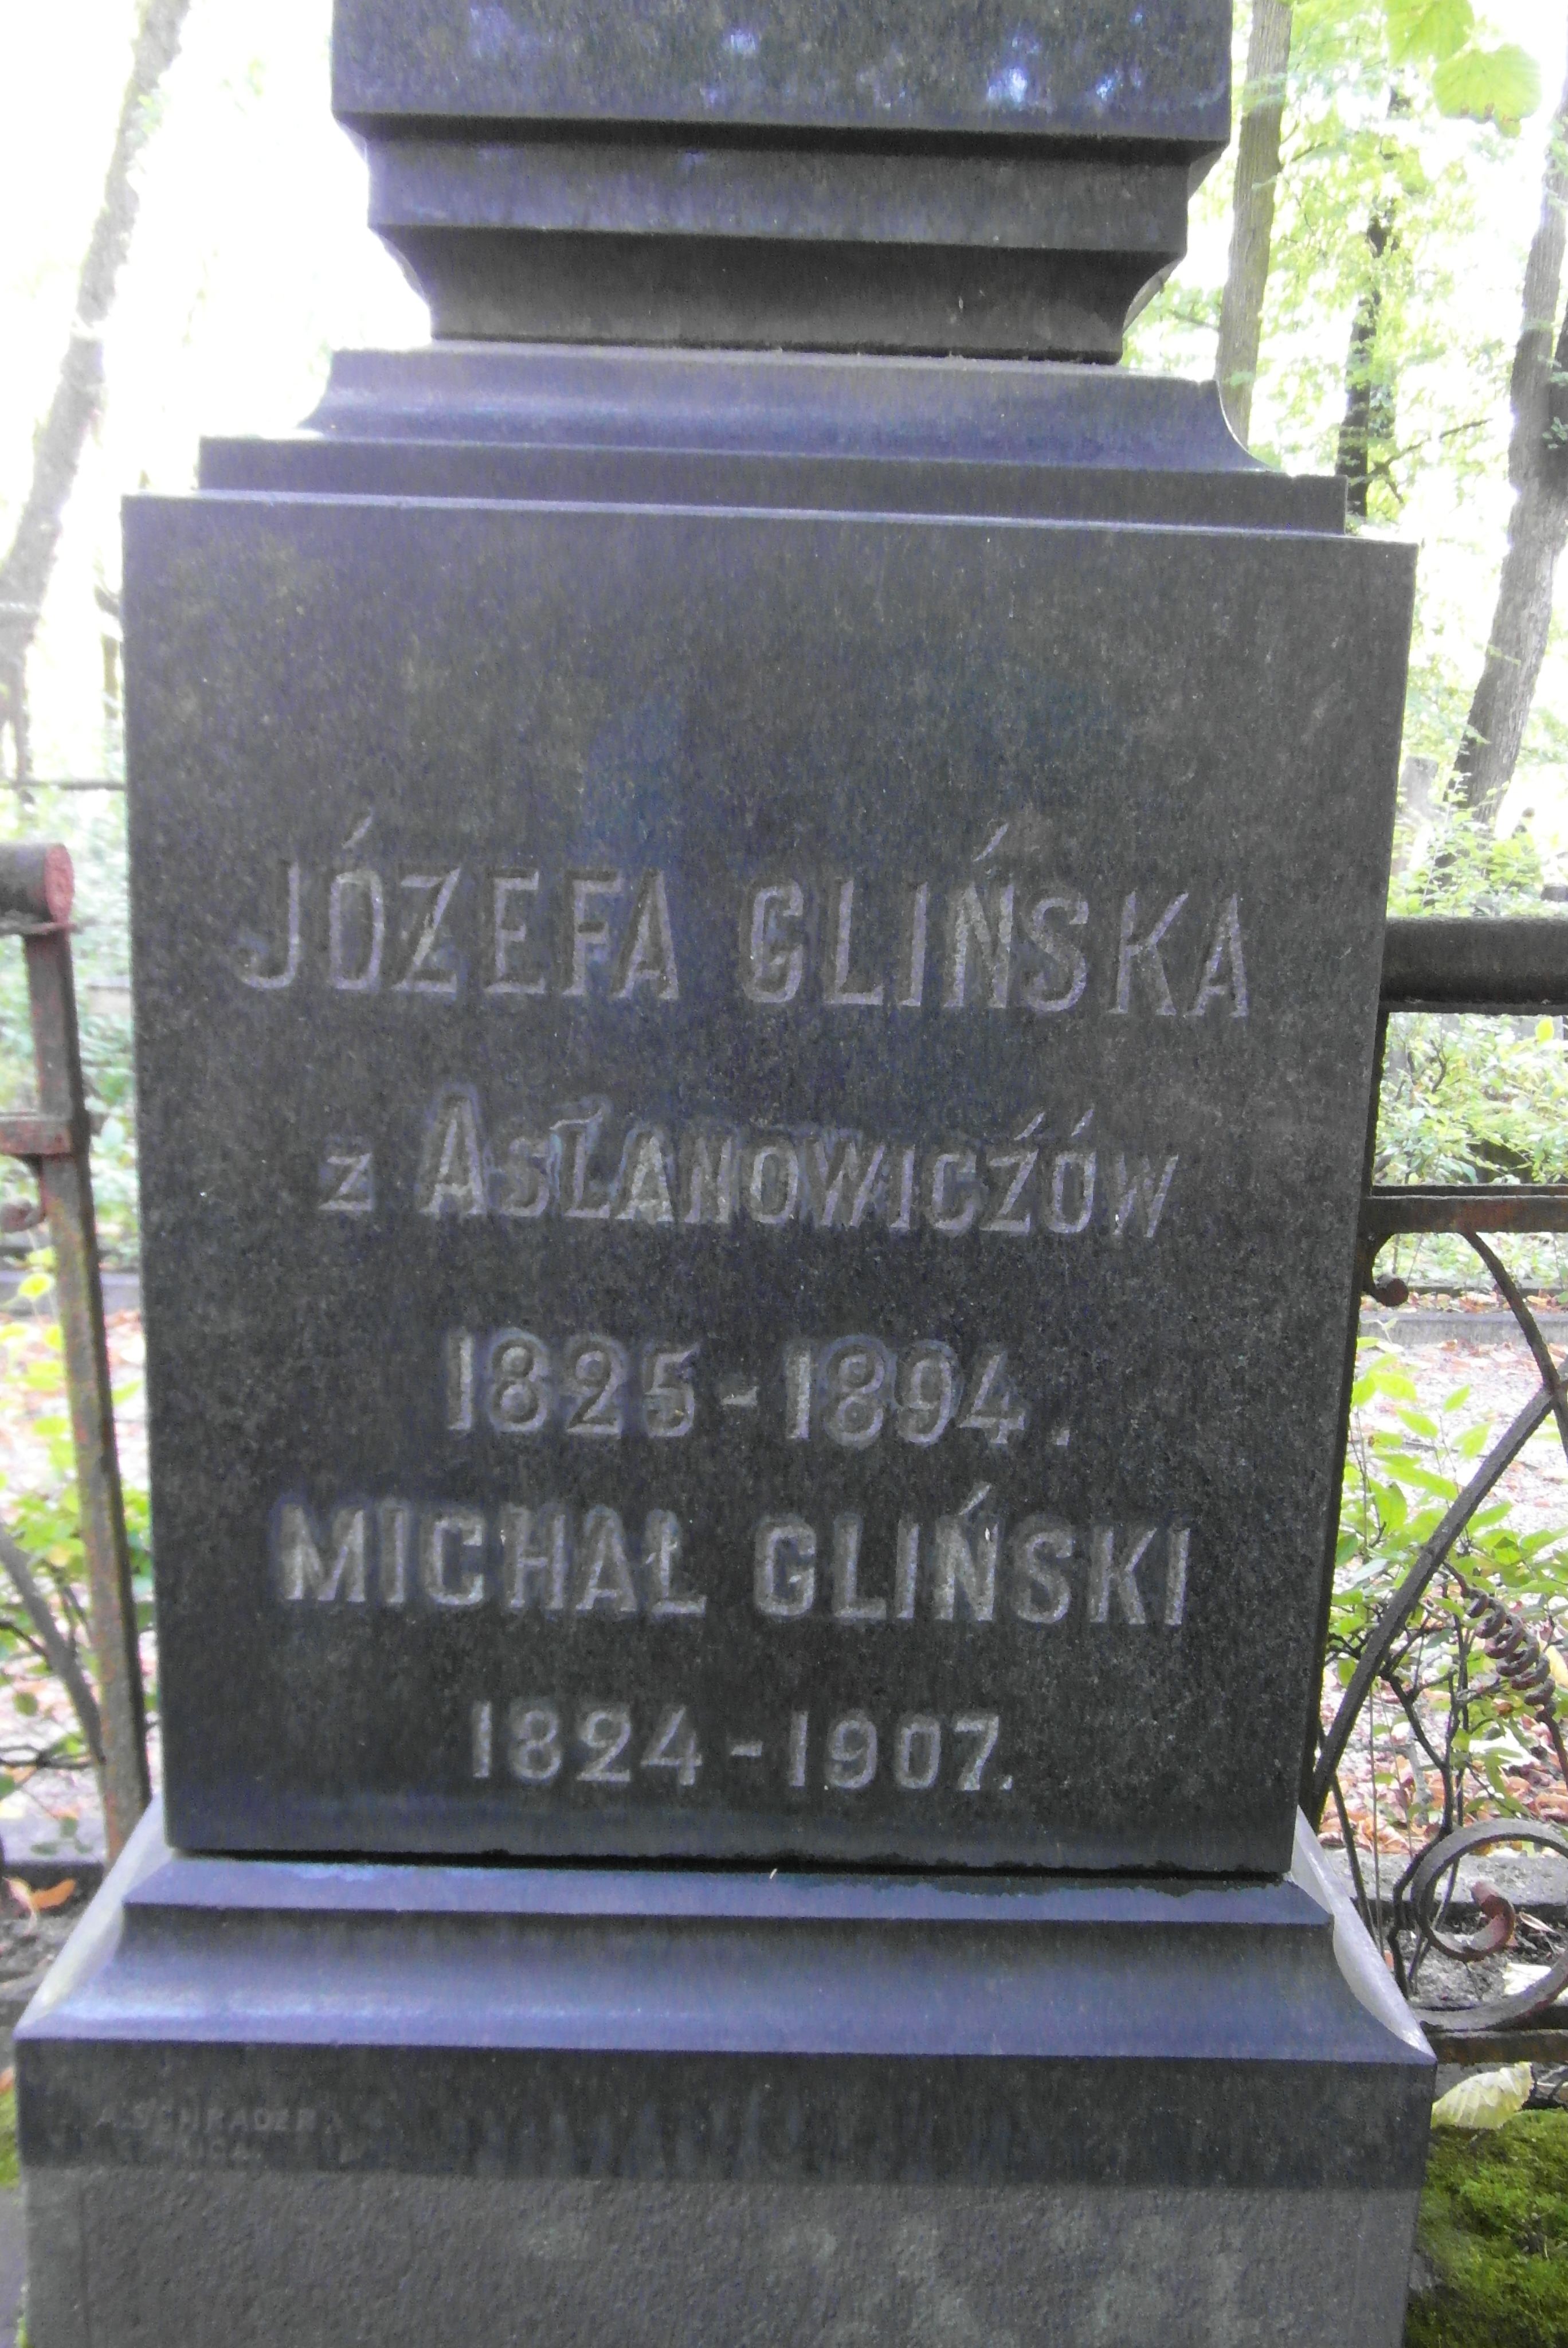 Inscription from the gravestone of Jozefa Glinska, Michal Glinski, St Michael's cemetery in Riga, as of 2021.